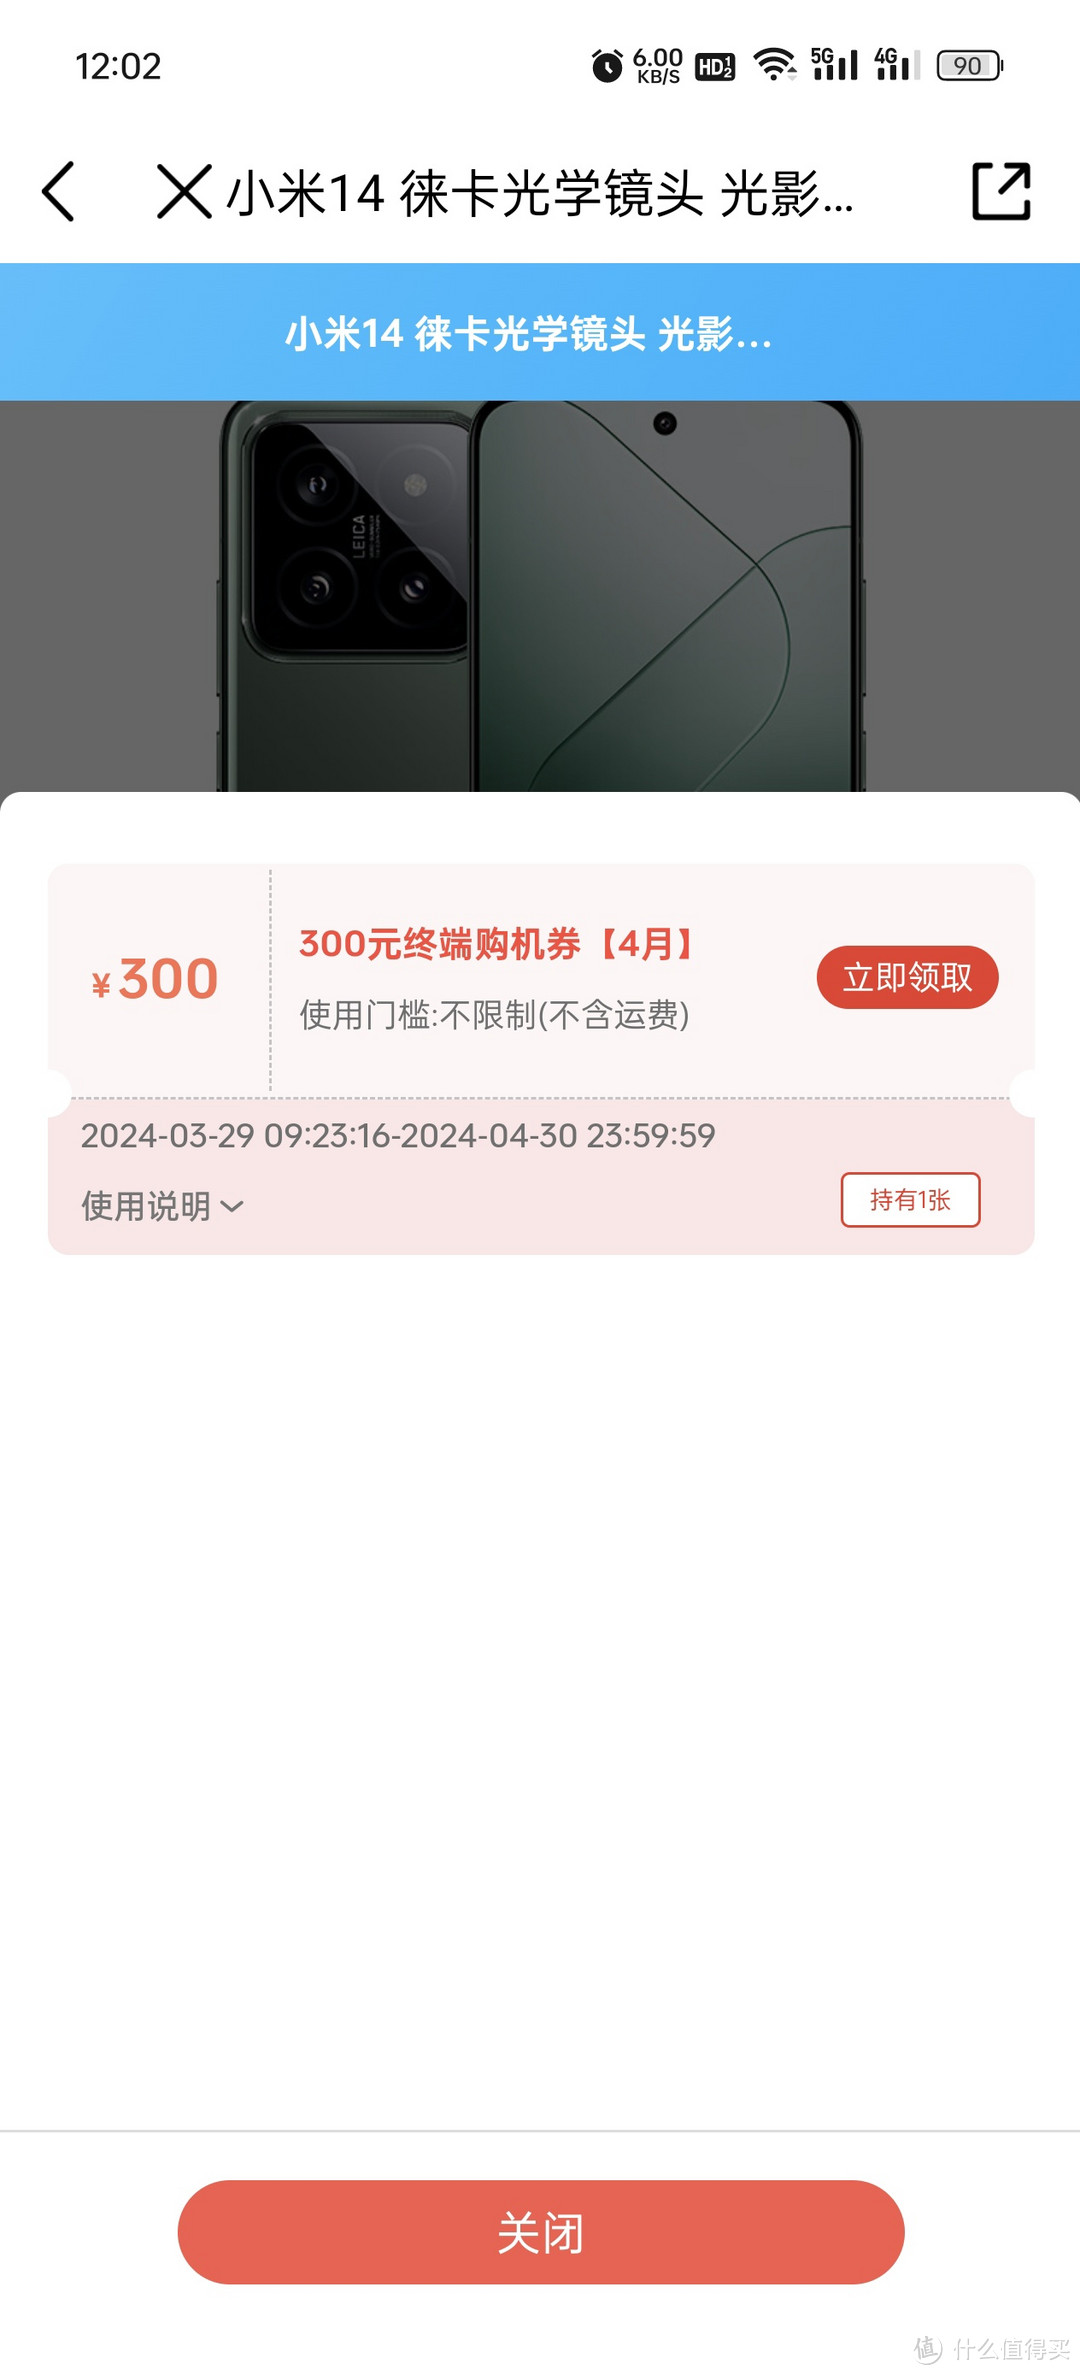 中国移动app 广东地区 小米14有优惠16+512的3599可拿下，其他品牌自测